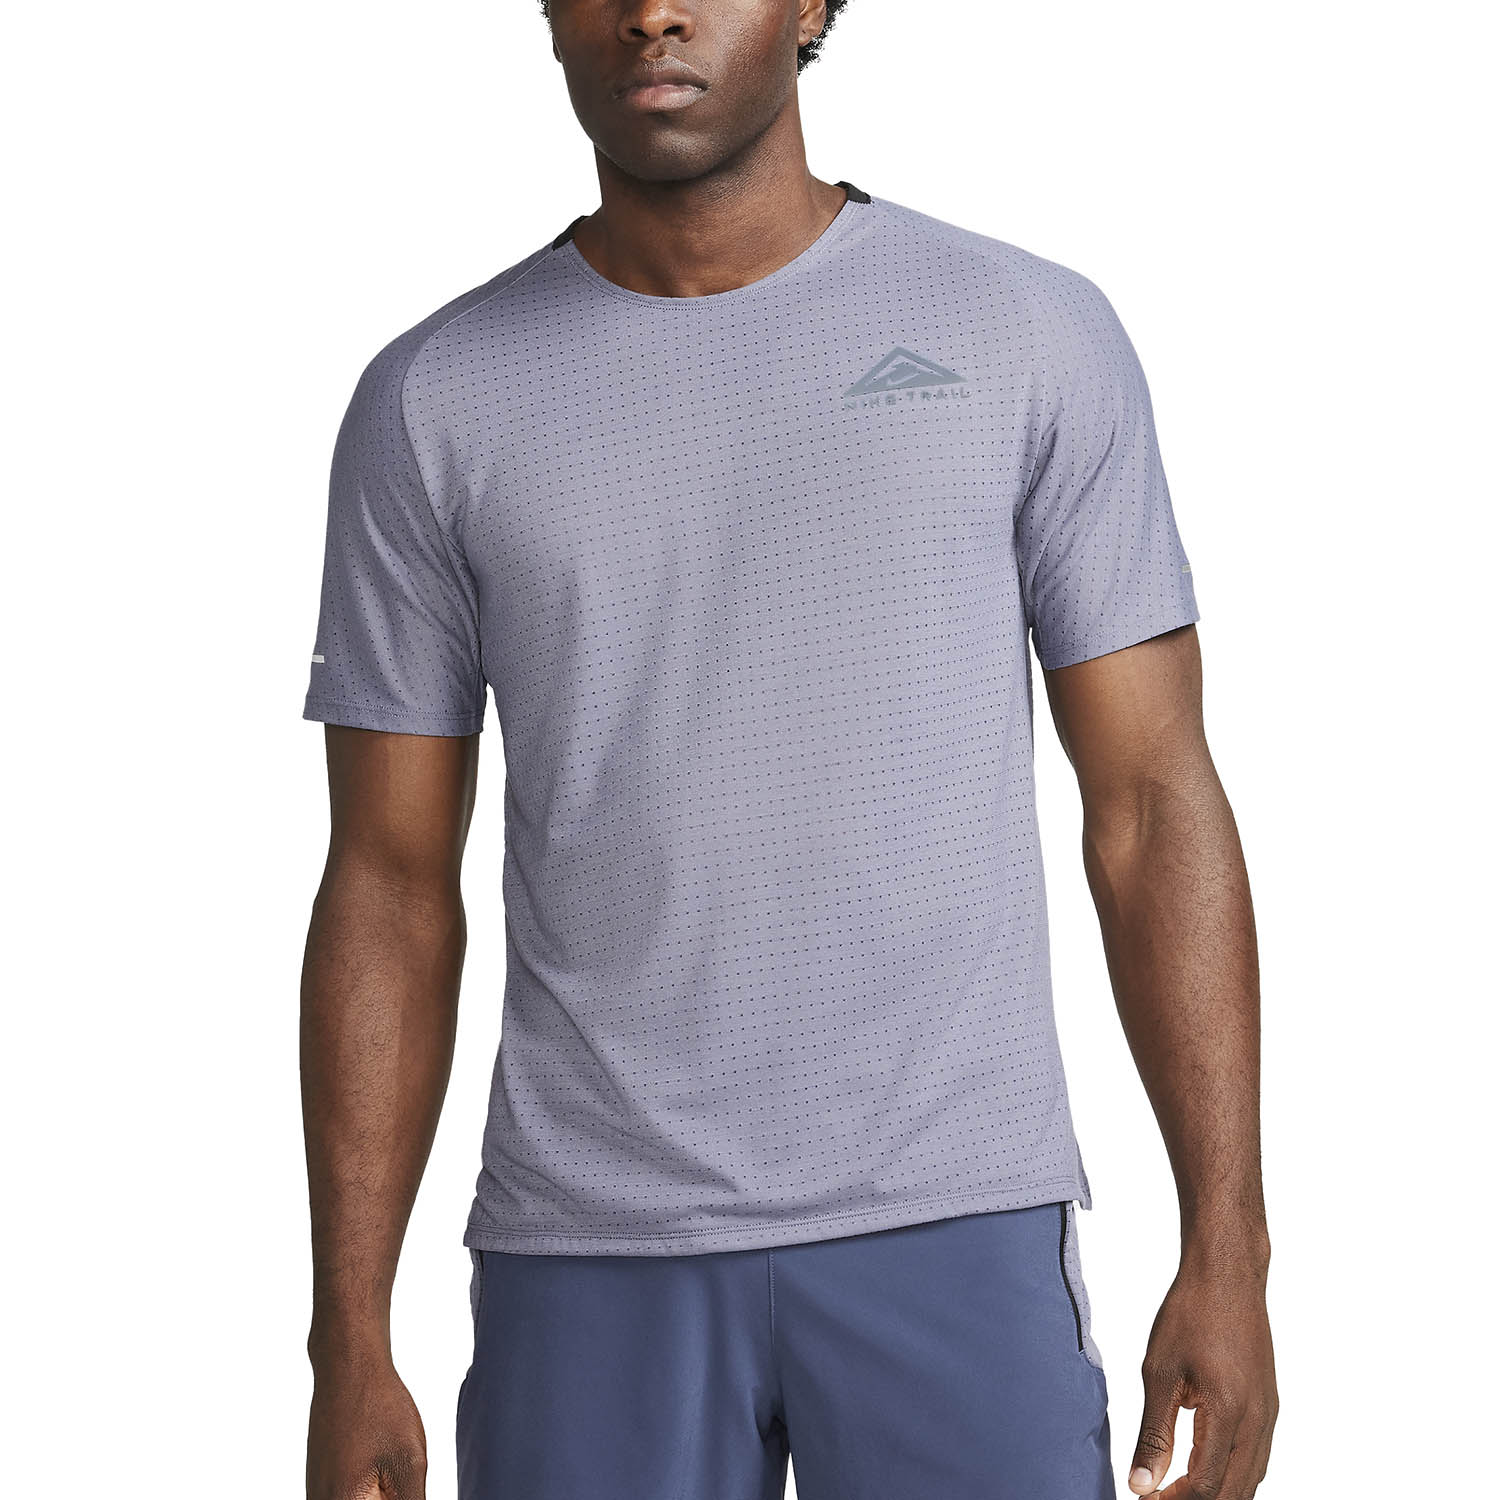 Nike Dri-FIT Solar Chase T-Shirt - Light Carbon/Black